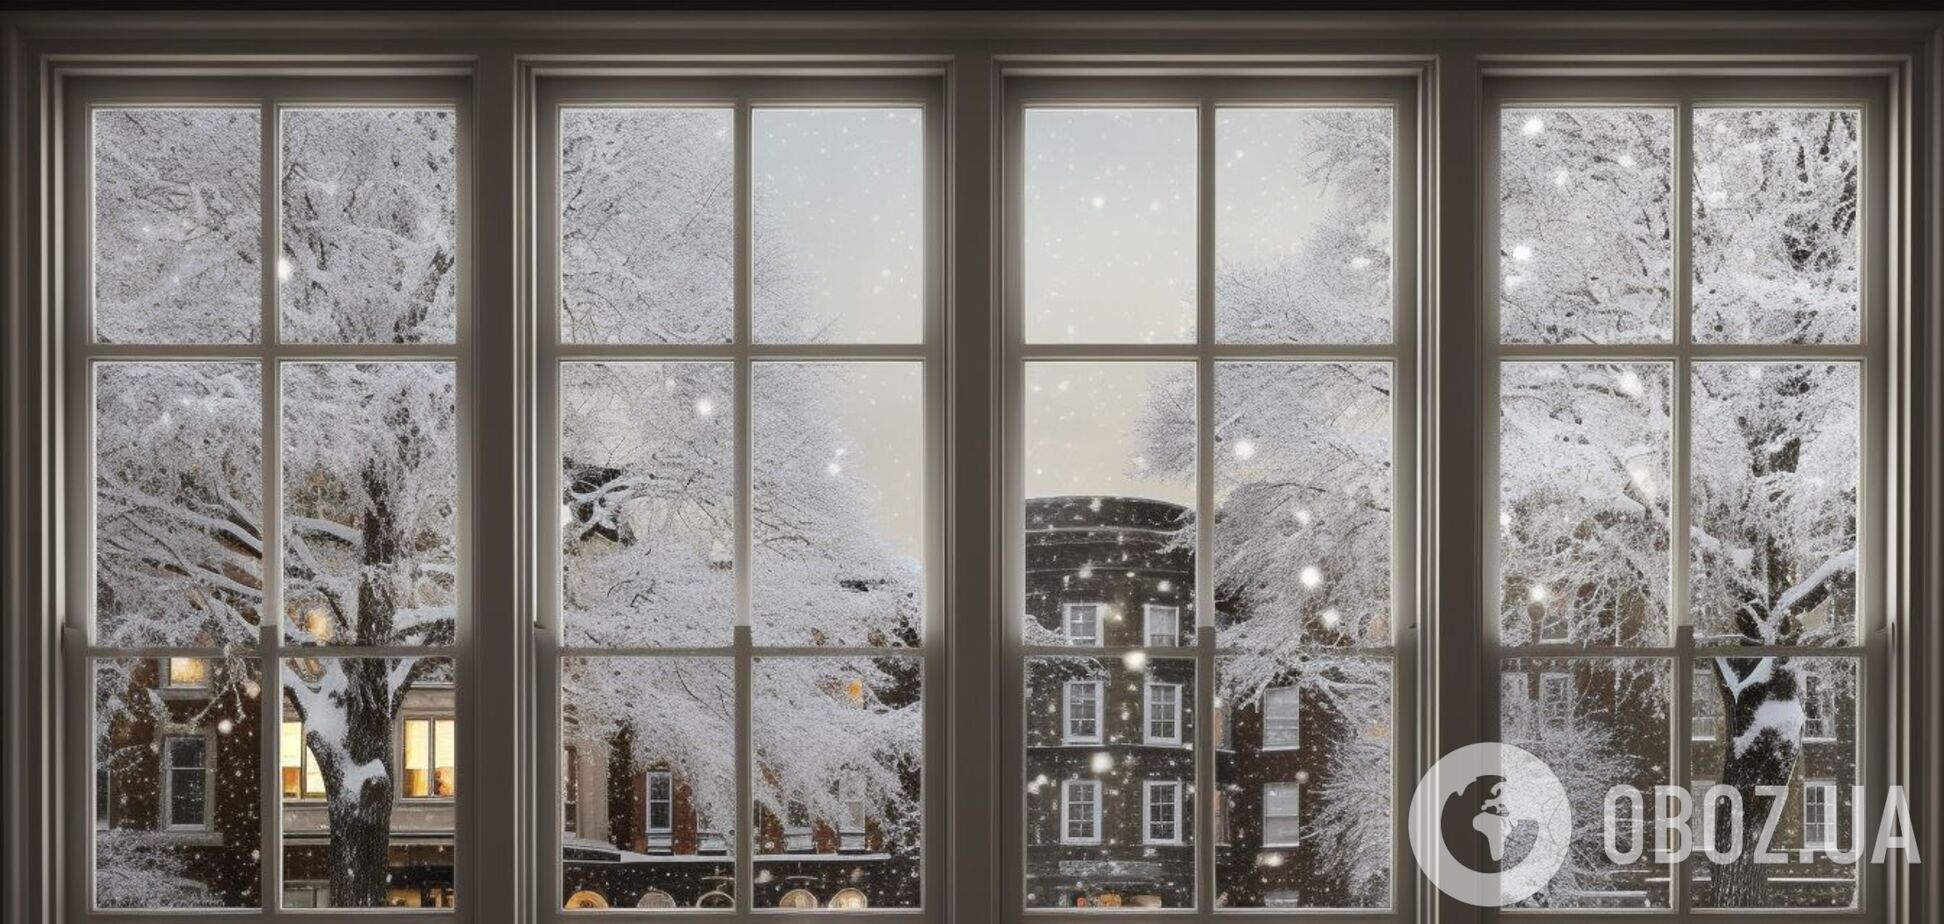 Как сделать, чтобы не запотевали окна: простой зимний лайфхак для холодной погоды